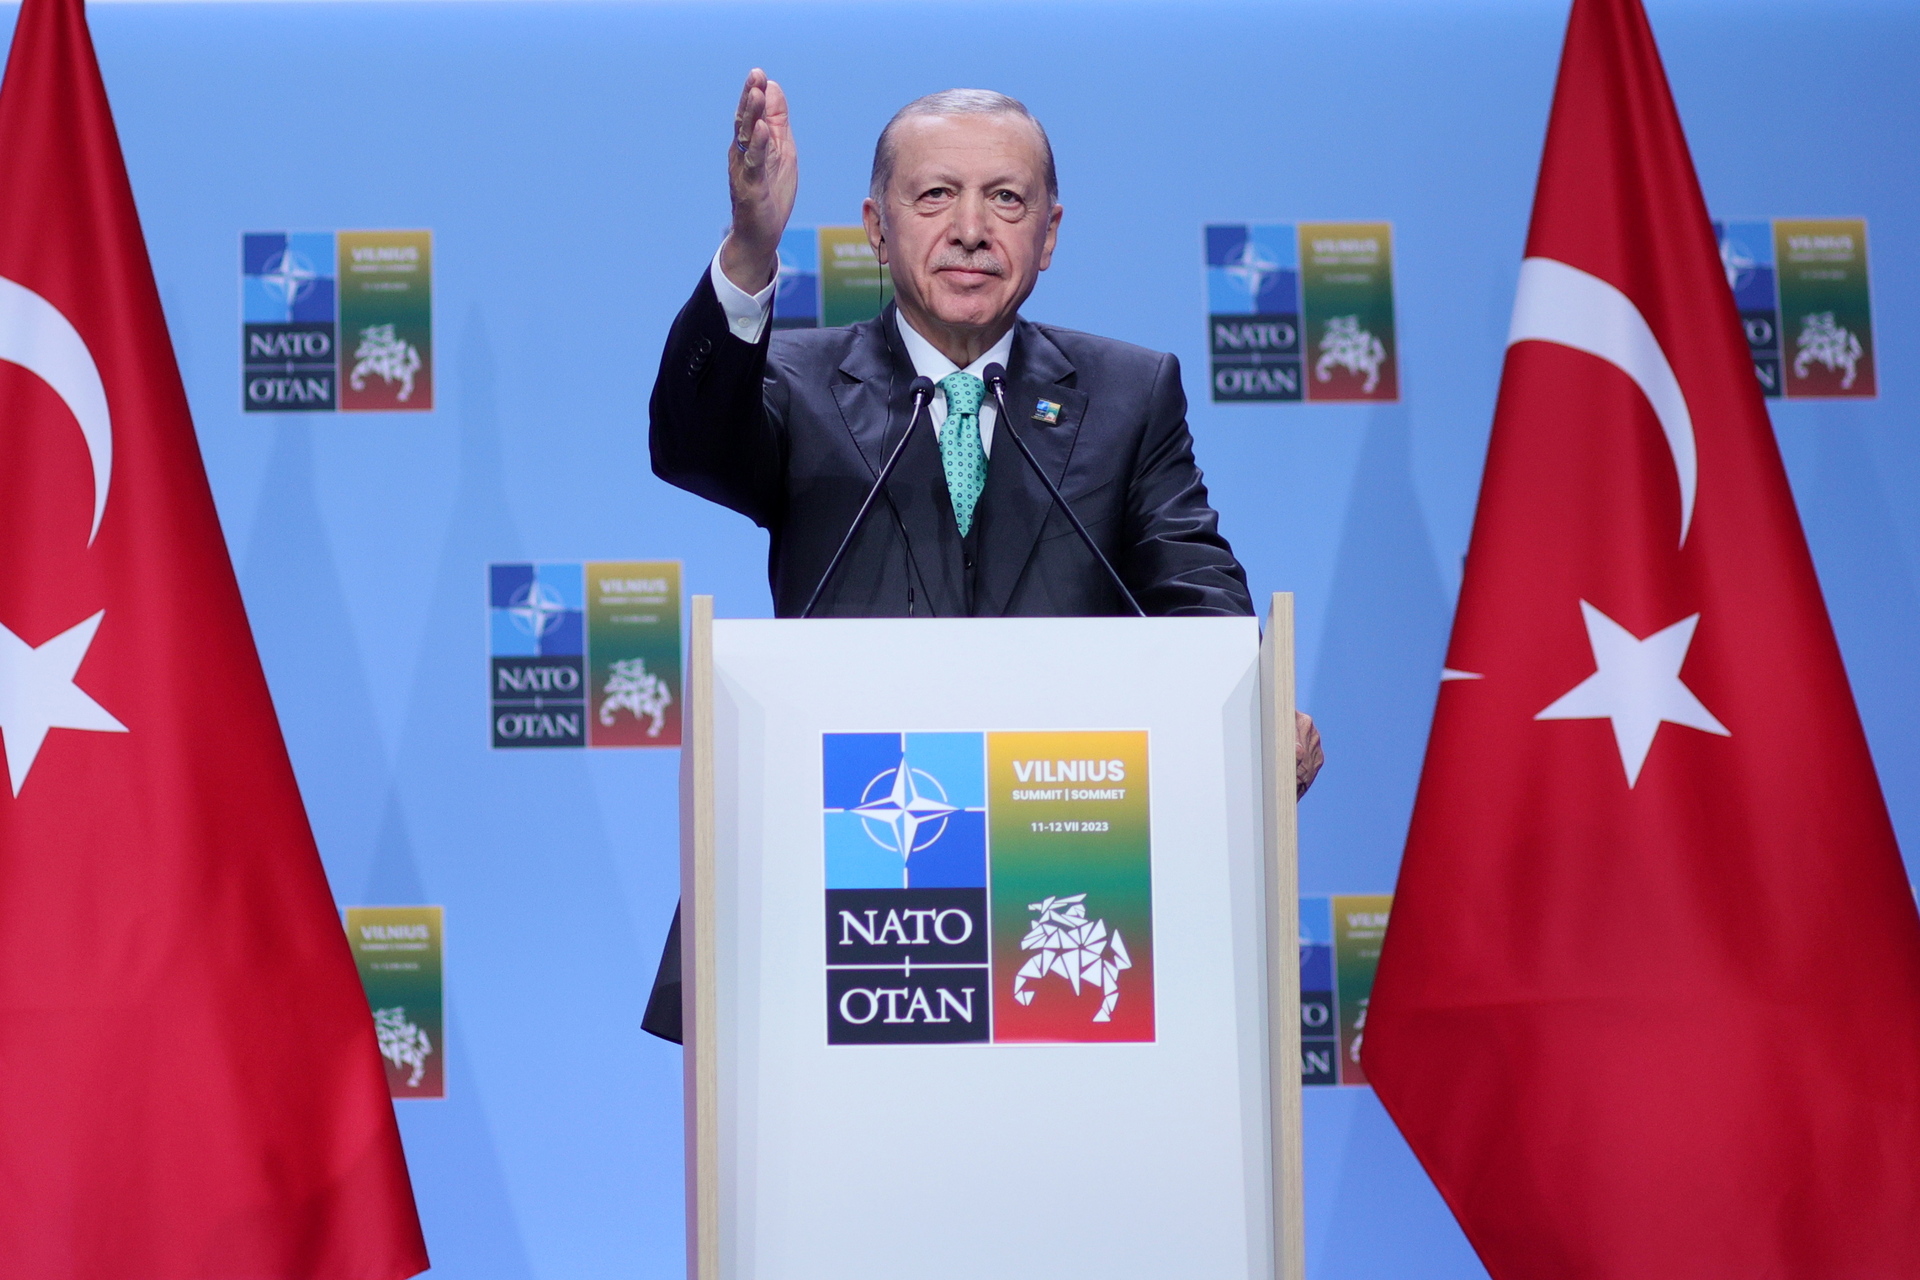 Türkiye will not ratify Sweden’s entry into NATO before October